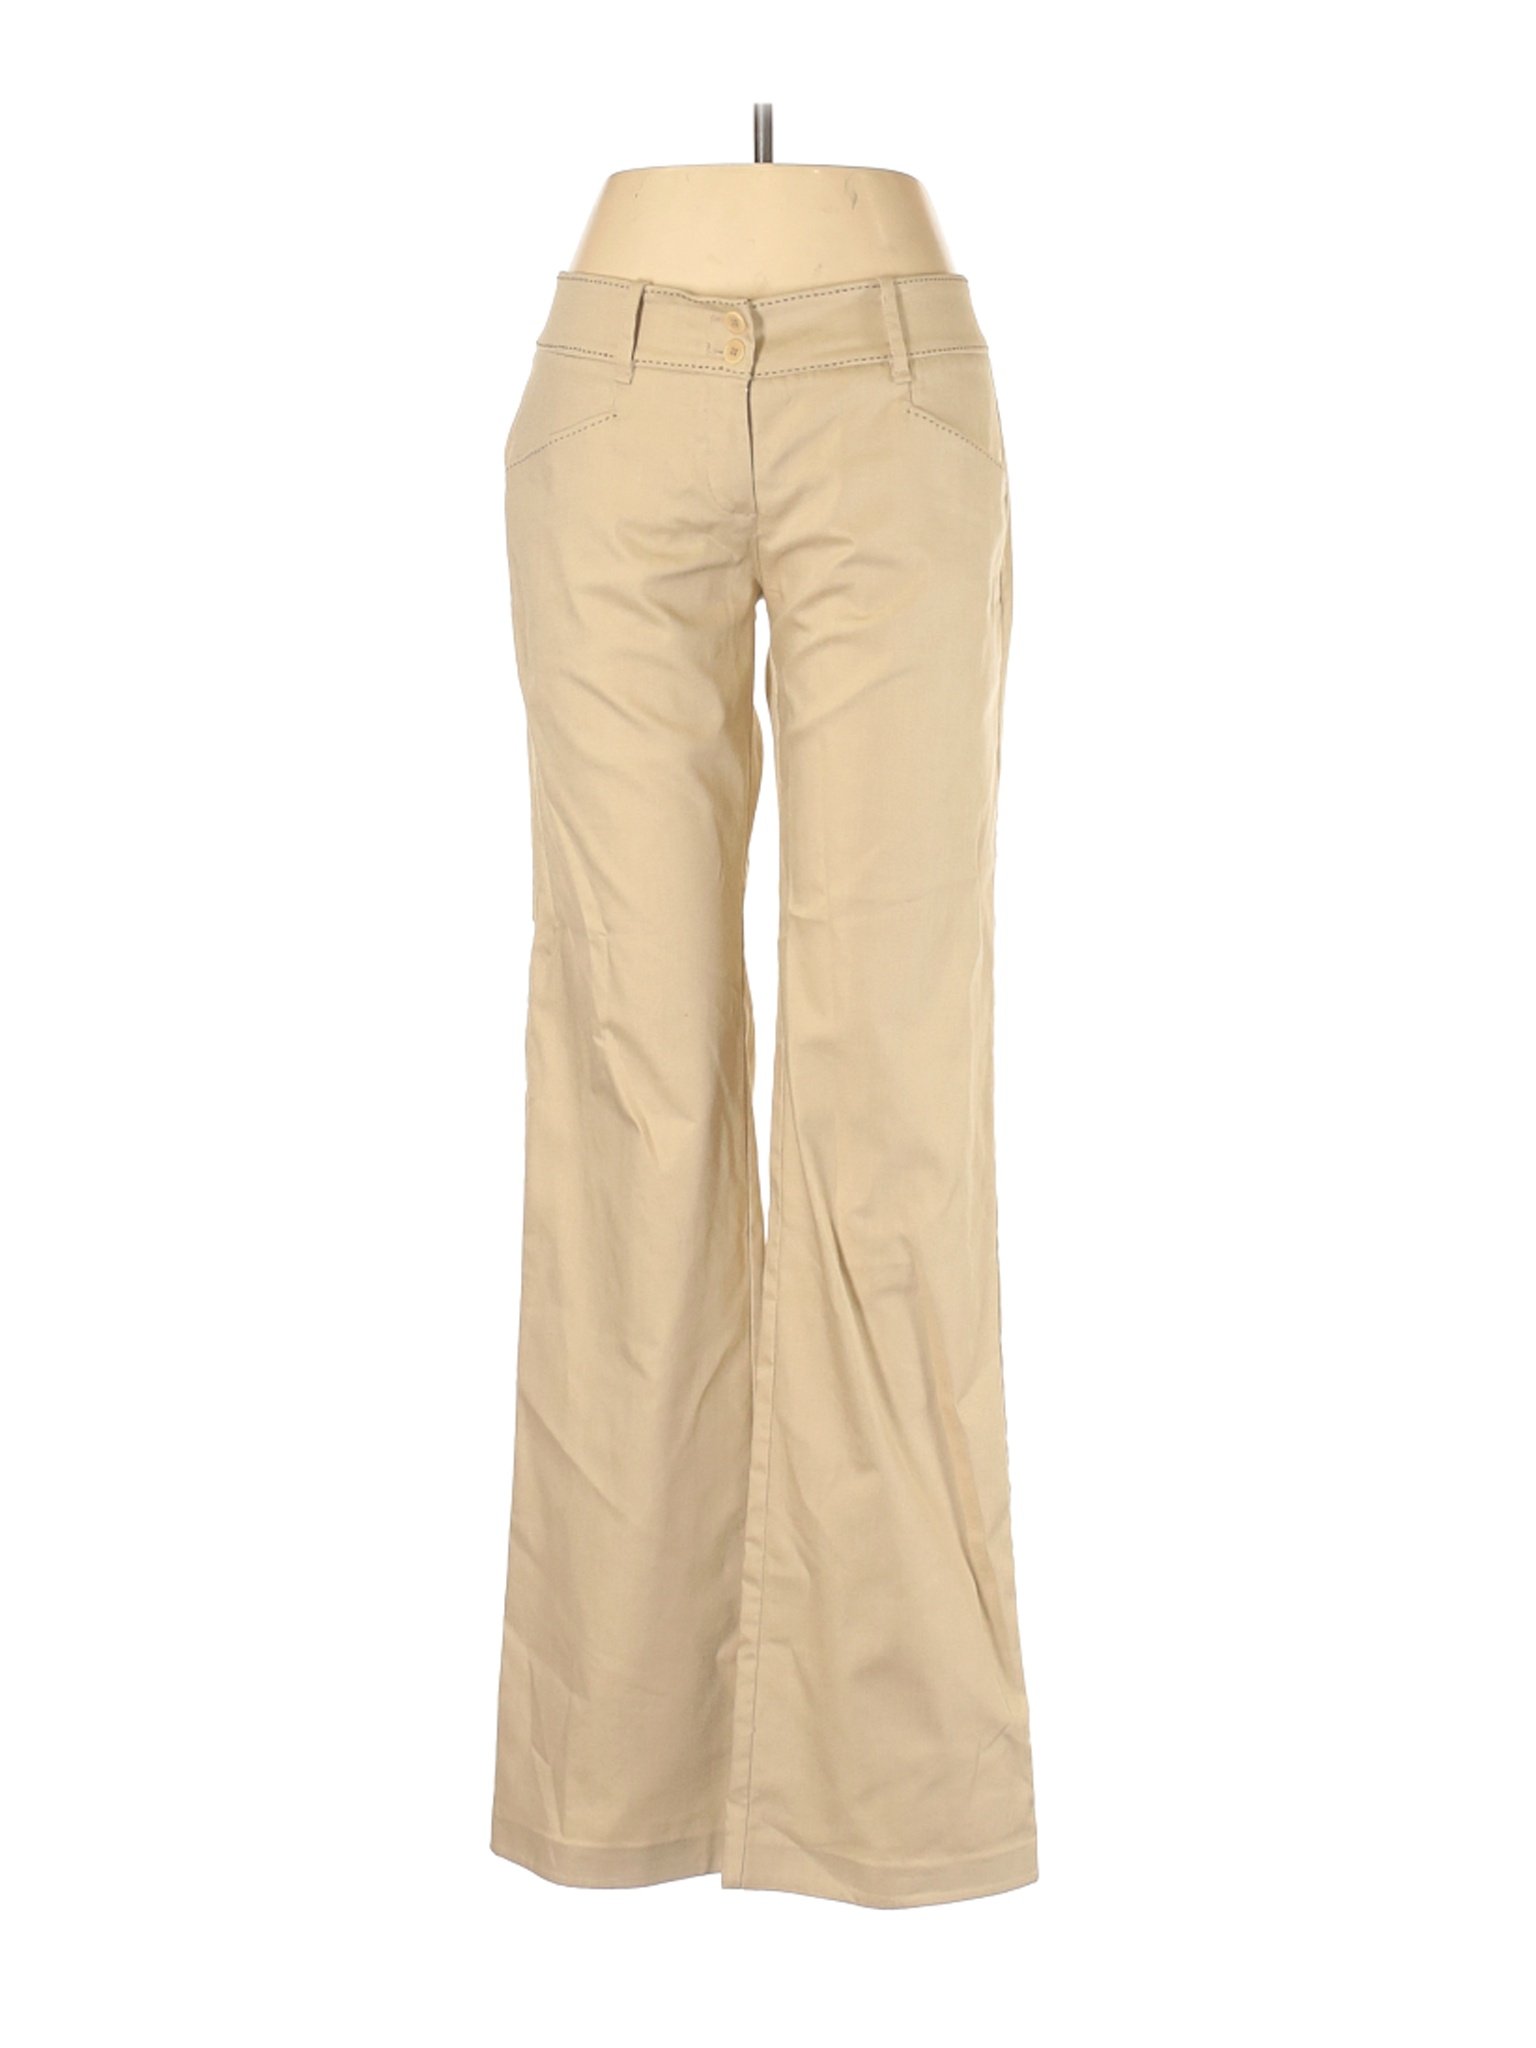 Max Studio Women Brown Casual Pants 6 | eBay